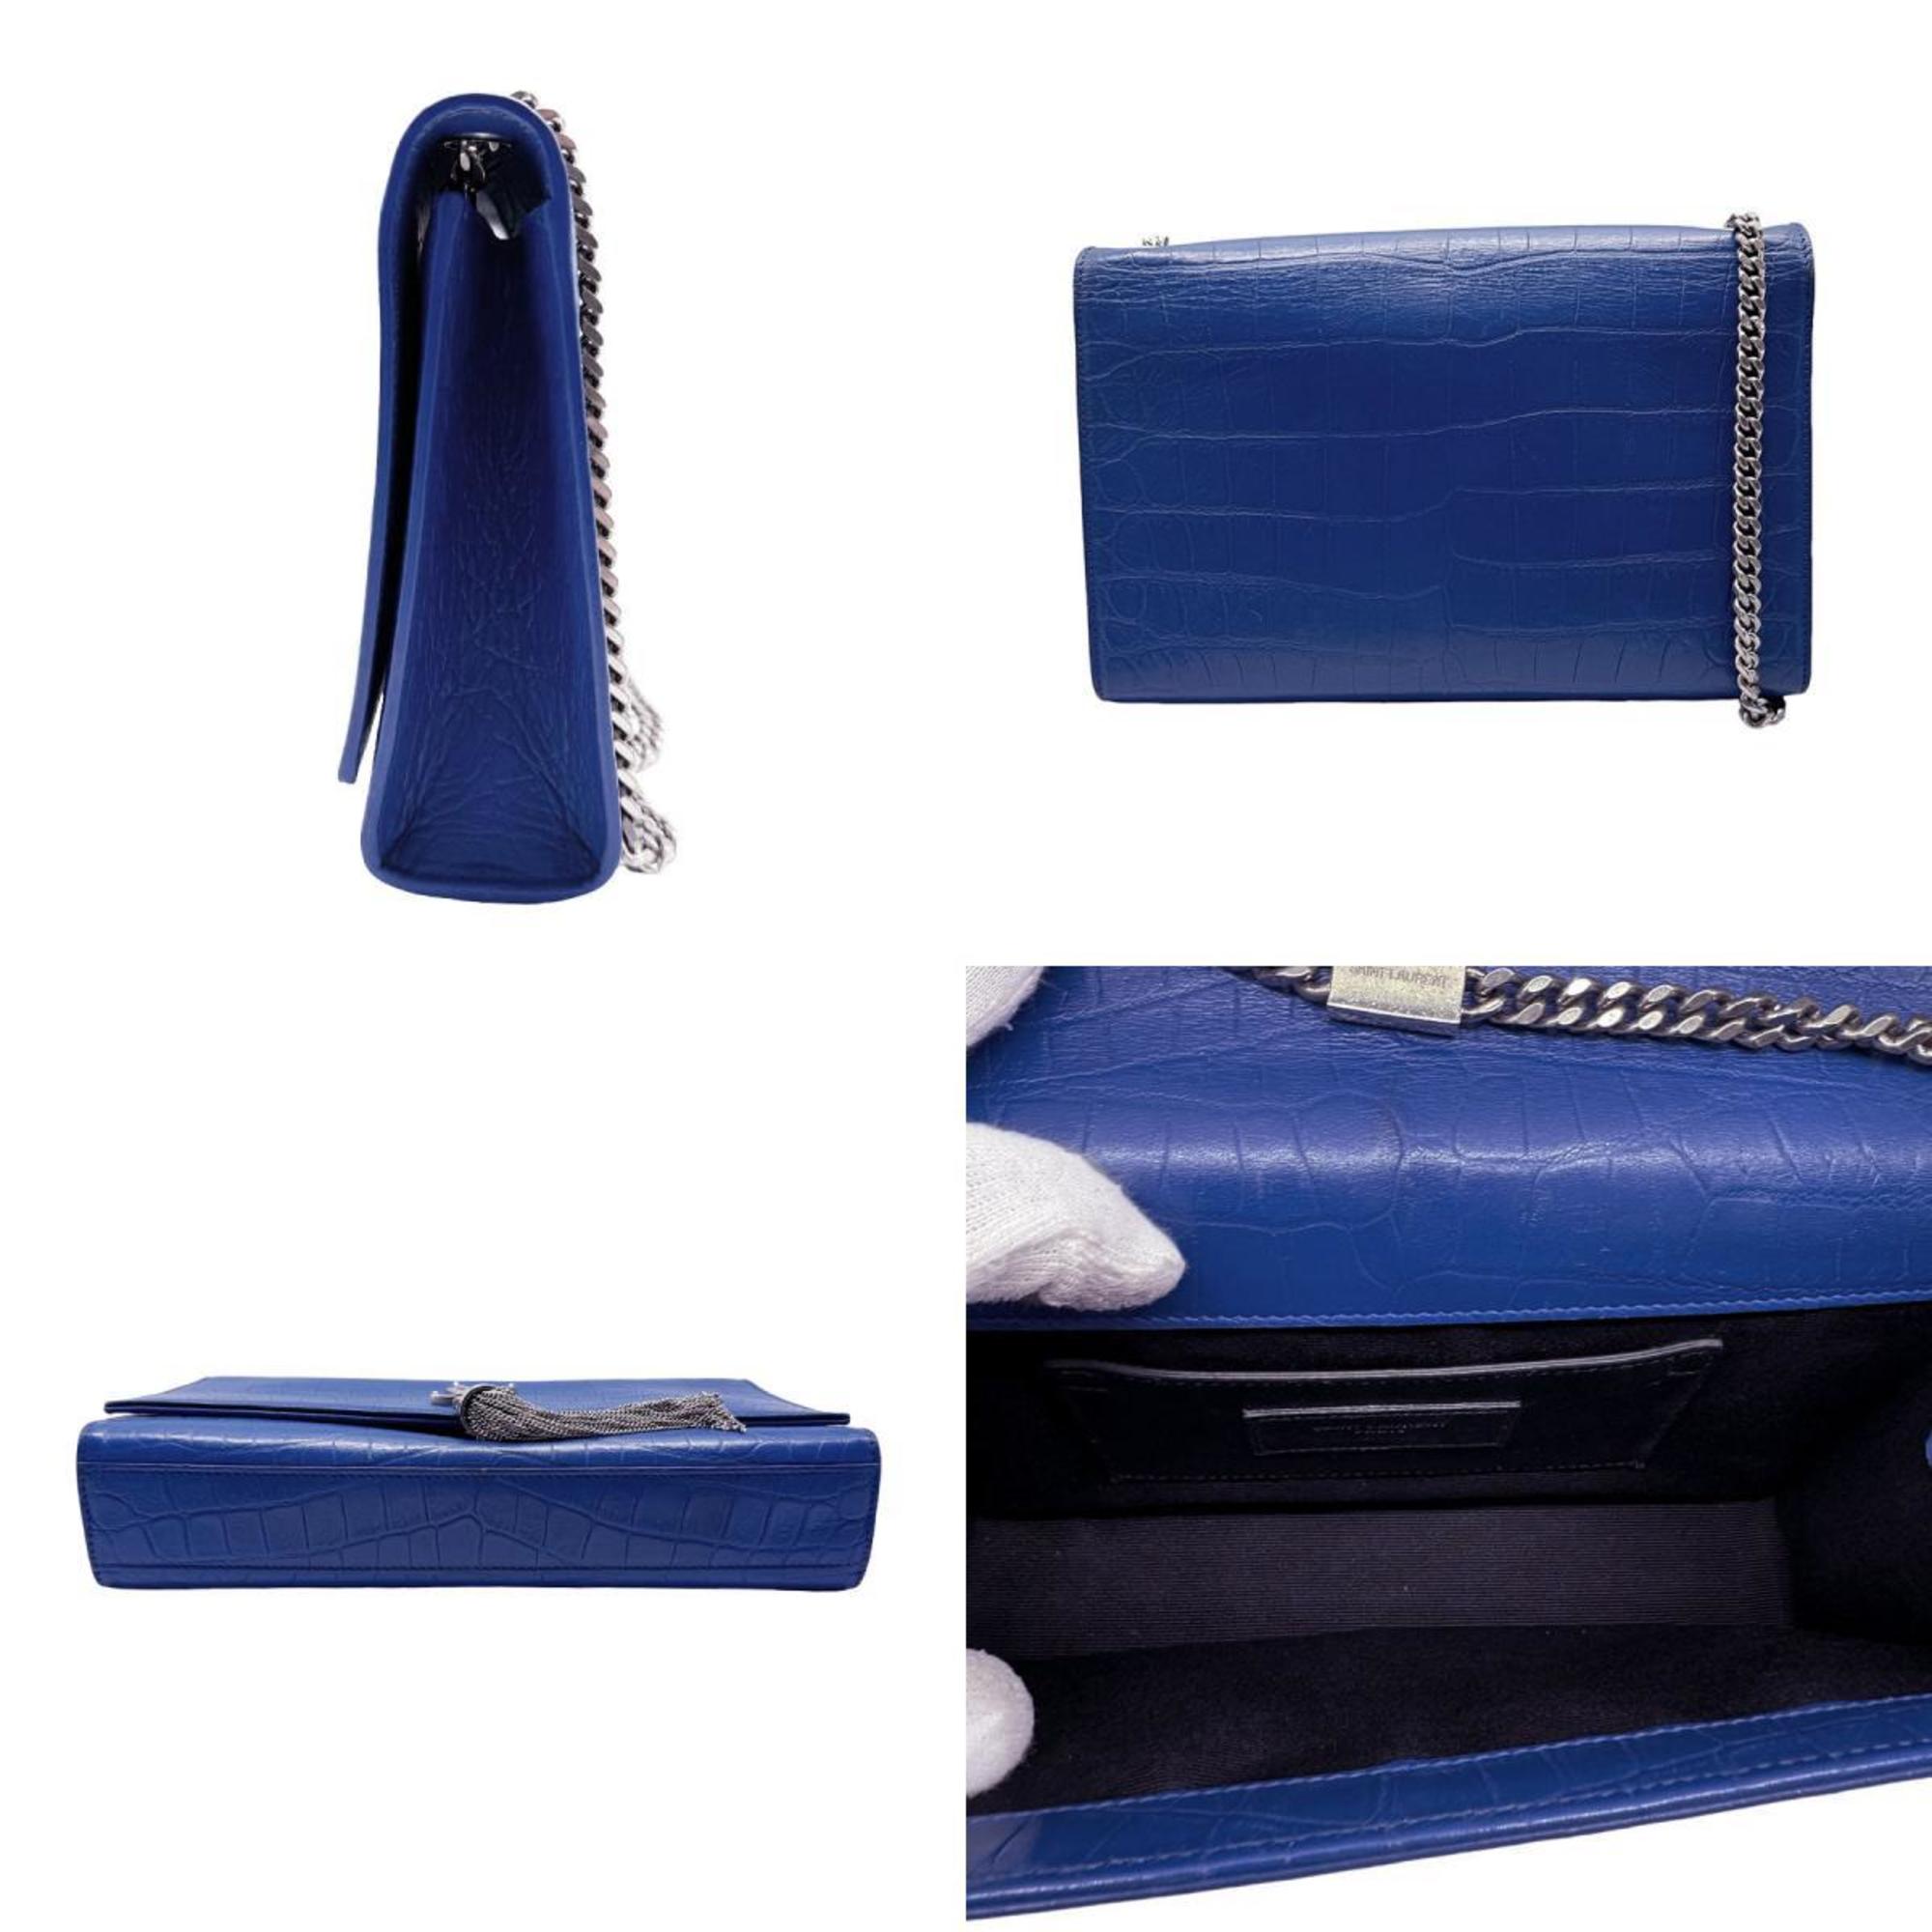 Saint Laurent shoulder bag in embossed leather, blue, for women, 354119 z0479